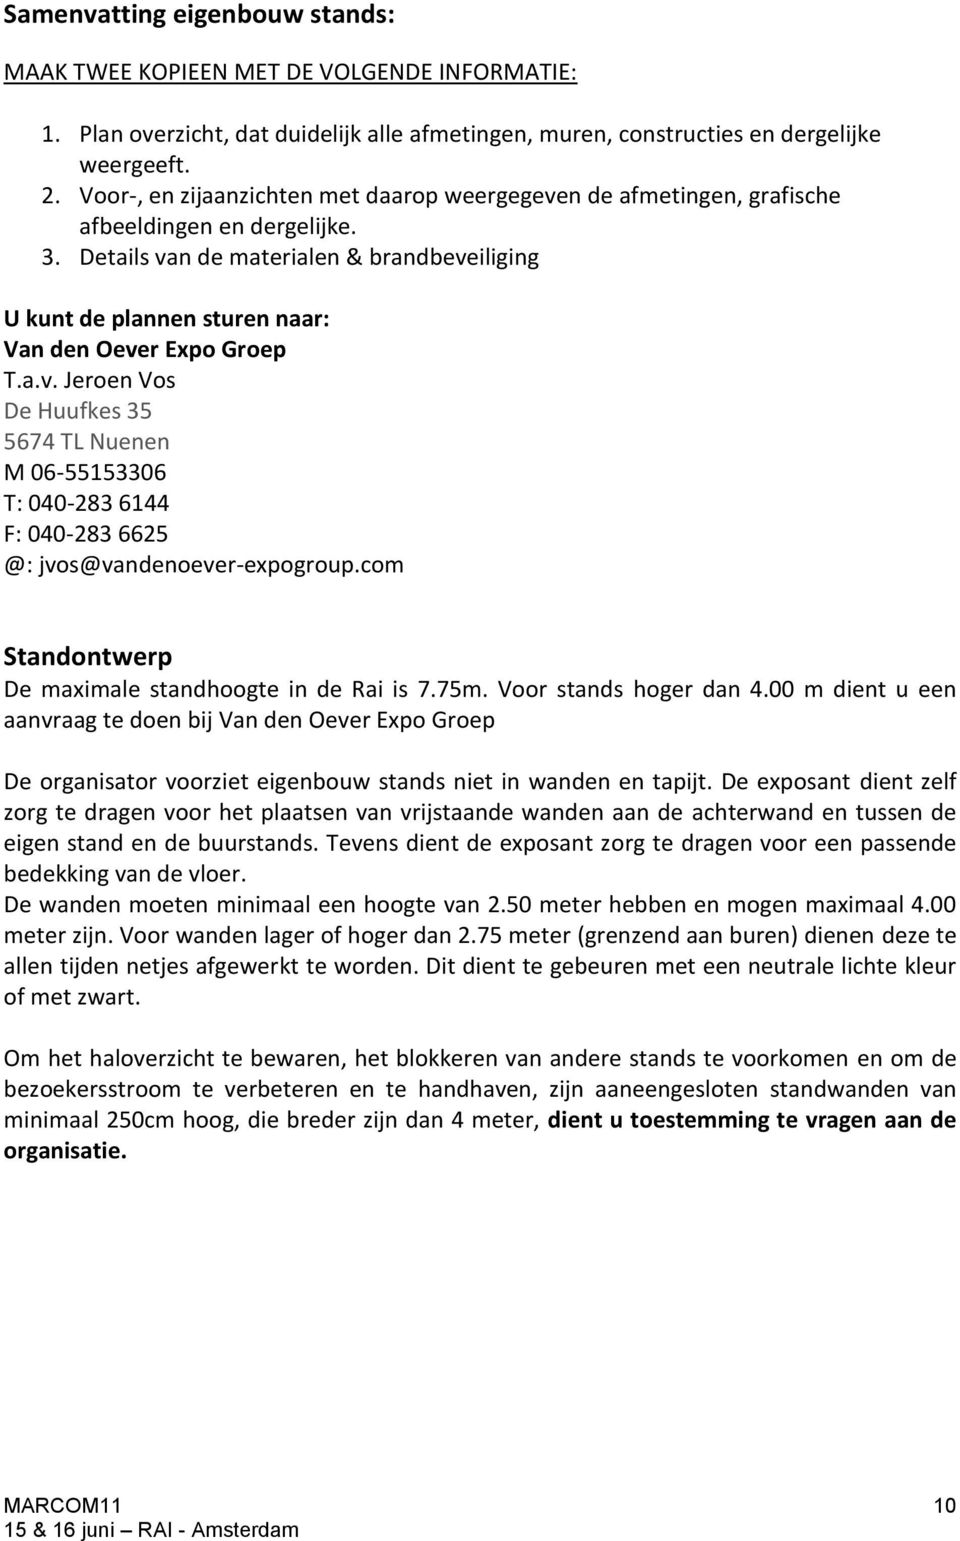 Details van de materialen & brandbeveiliging U kunt de plannen sturen naar: Van den Oever Expo Groep T.a.v. Jeroen Vos De Huufkes 35 5674 TL Nuenen M 06-55153306 T: 040-283 6144 F: 040-283 6625 @: jvos@vandenoever-expogroup.